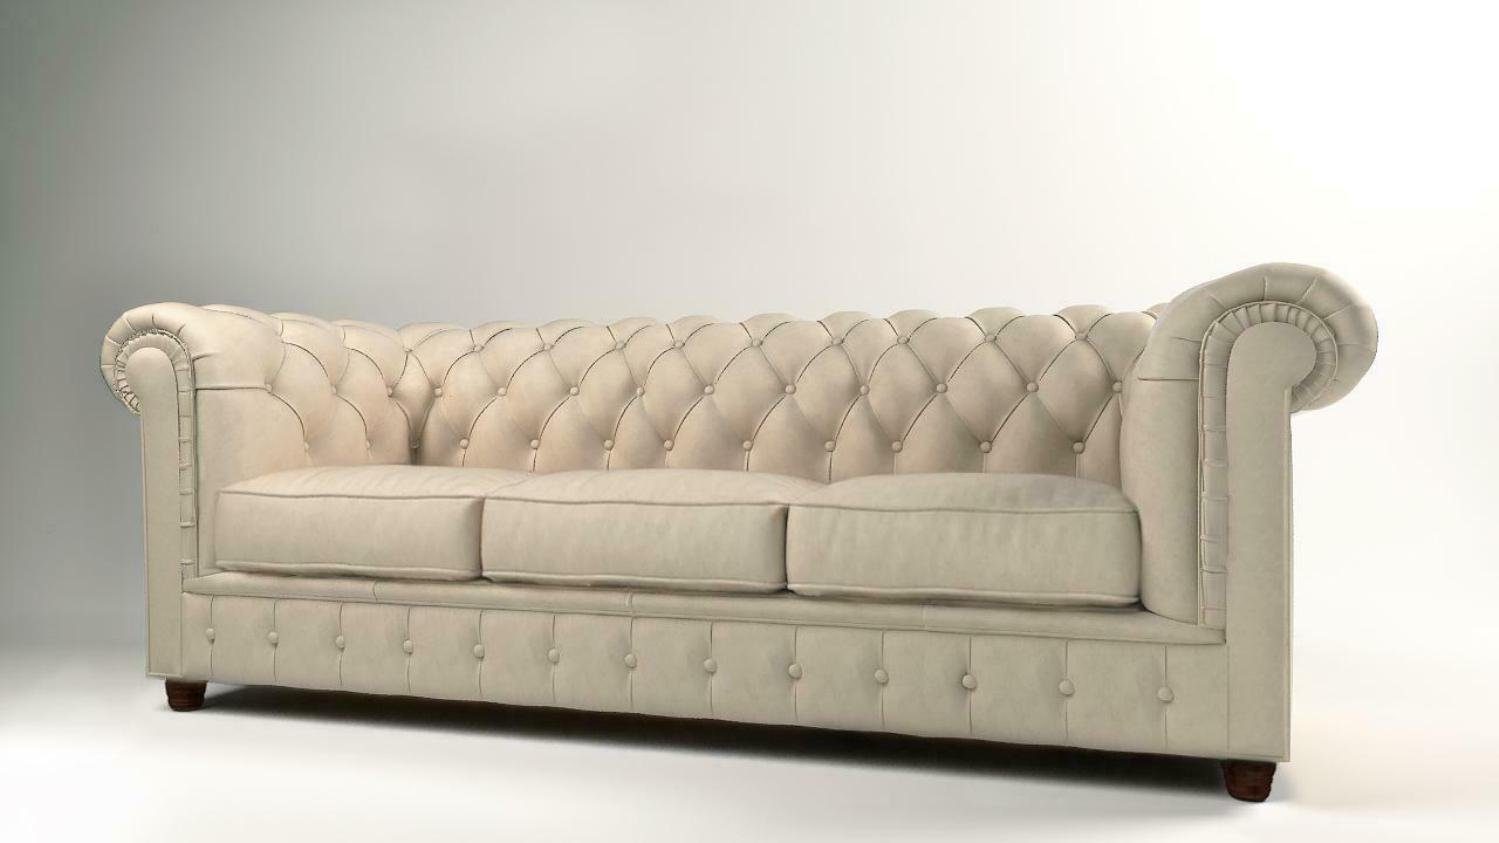 Die günstigen Neuerscheinungen von heute JVmoebel Sofa, Design Chesterfield Couch Sofas Couchen Polster Sitz Sofa